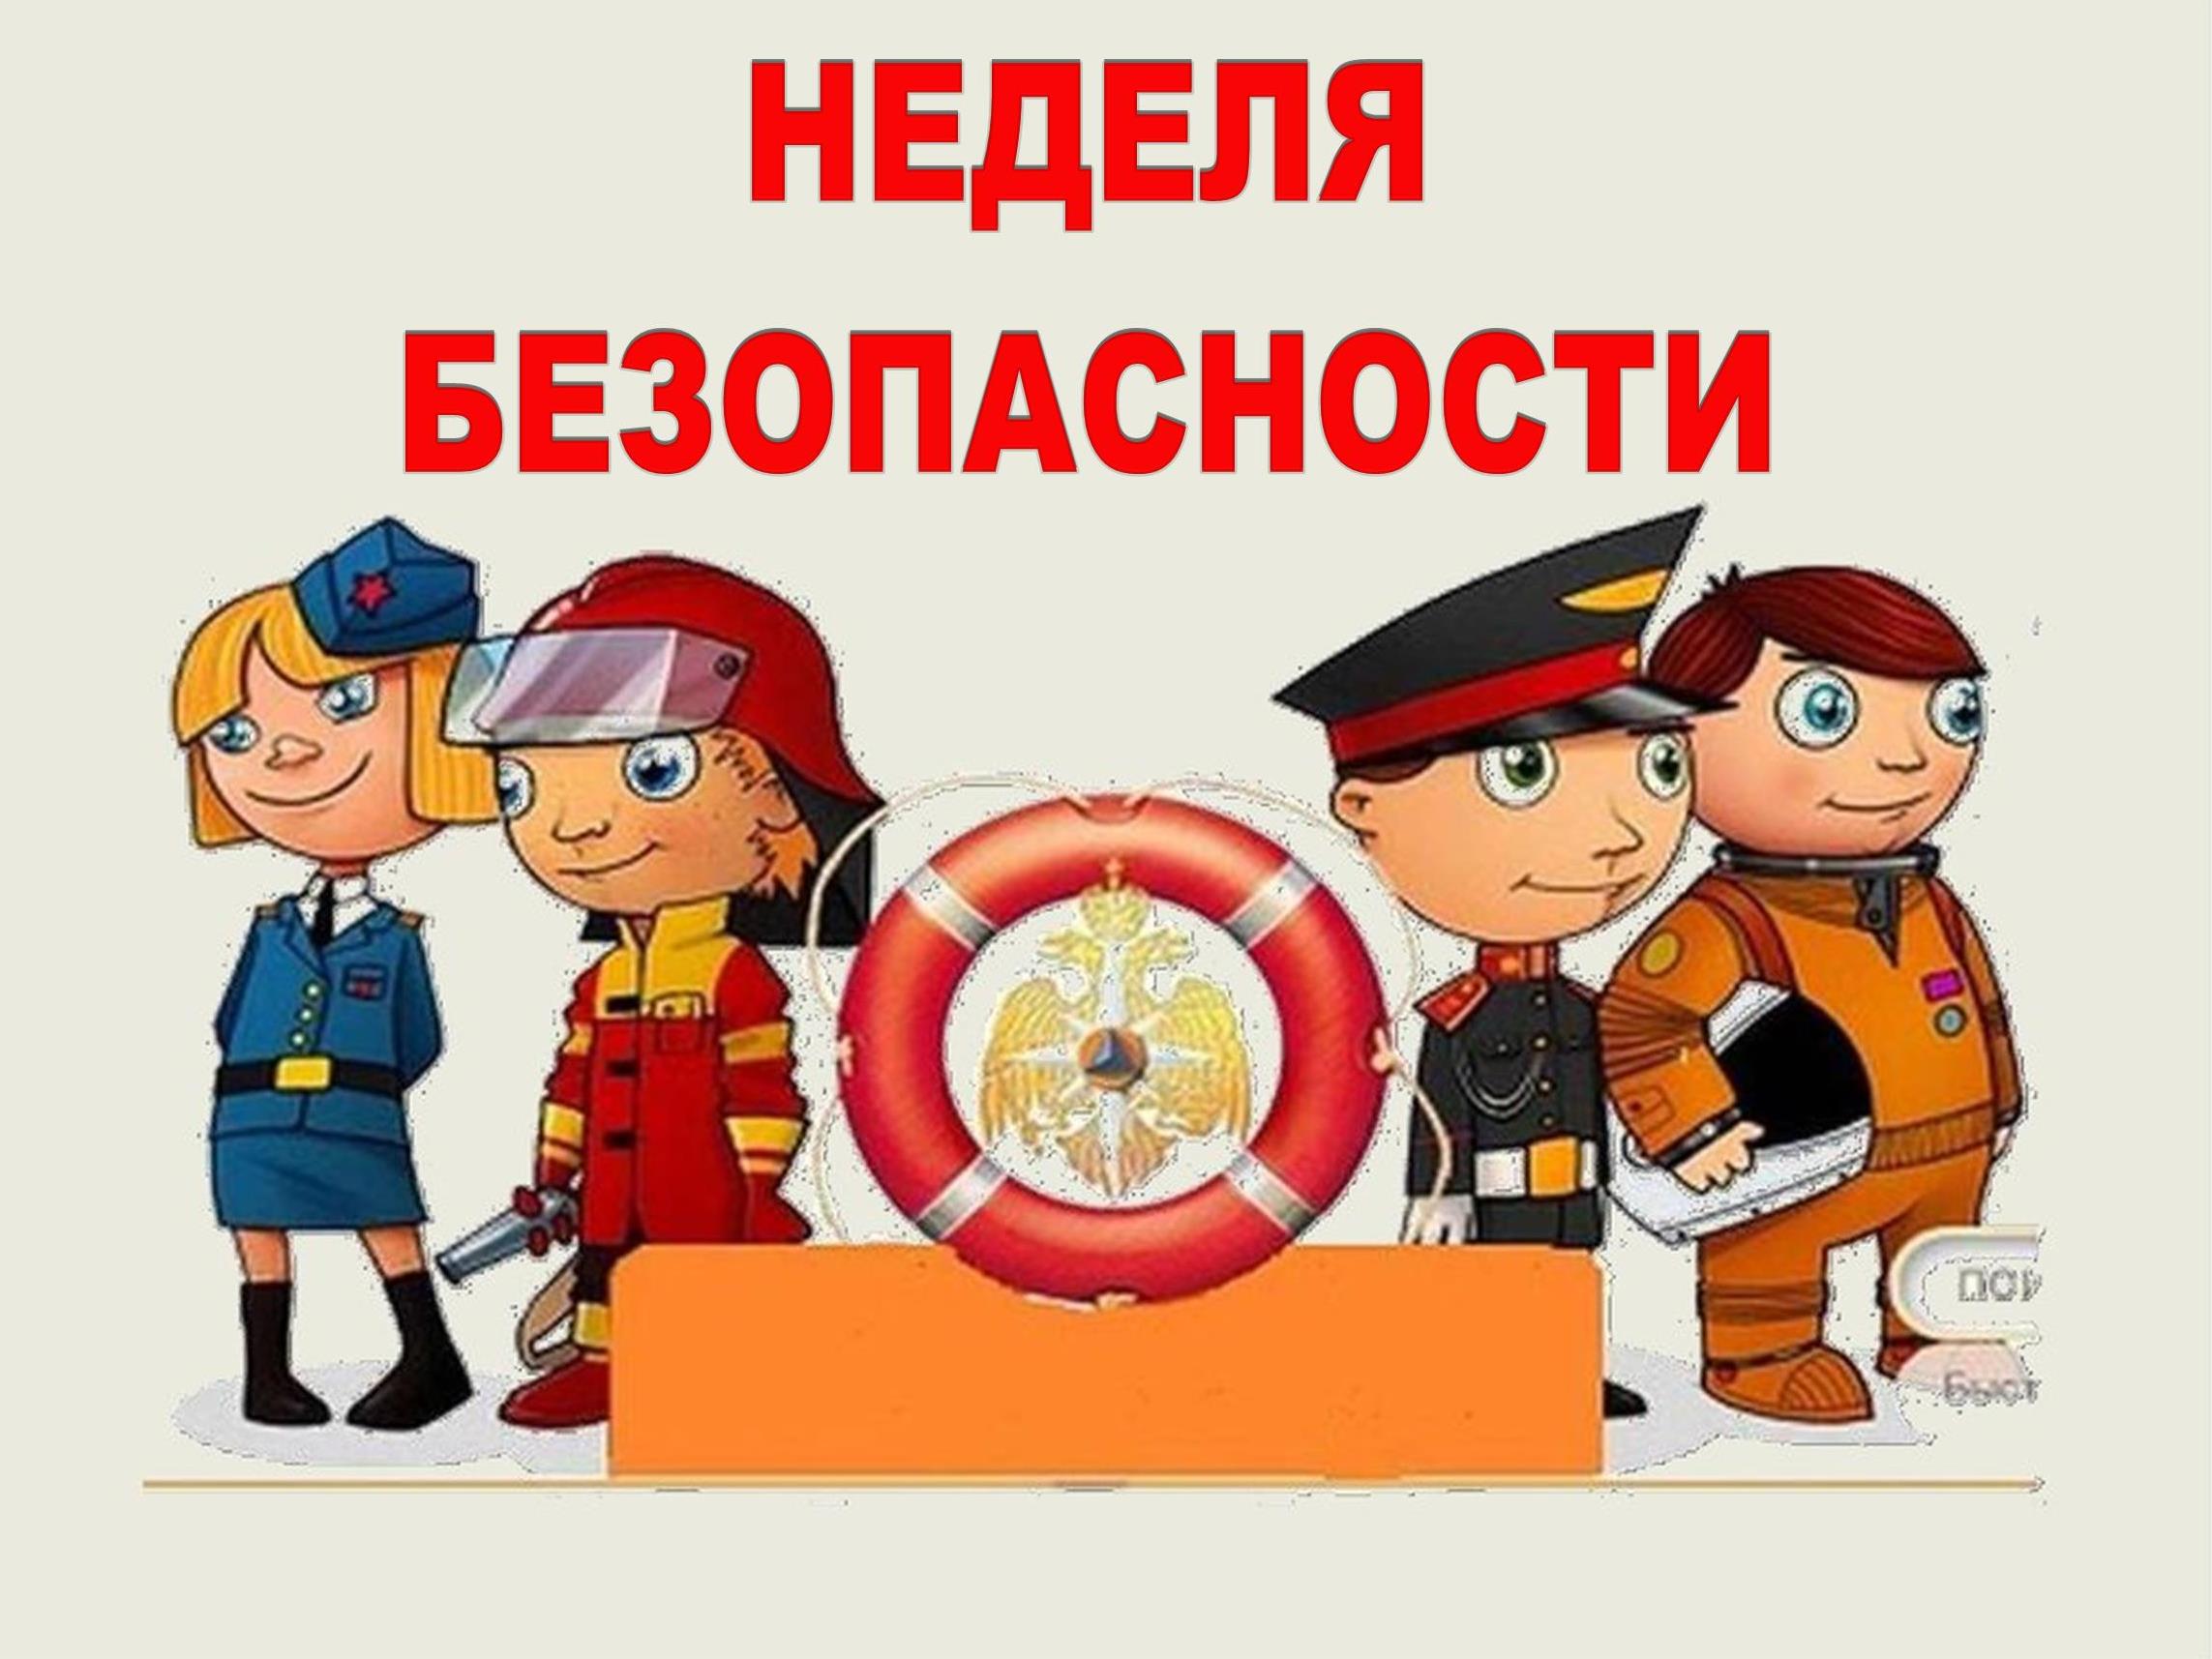 «Неделя безопасности» пройдет в регионах России.